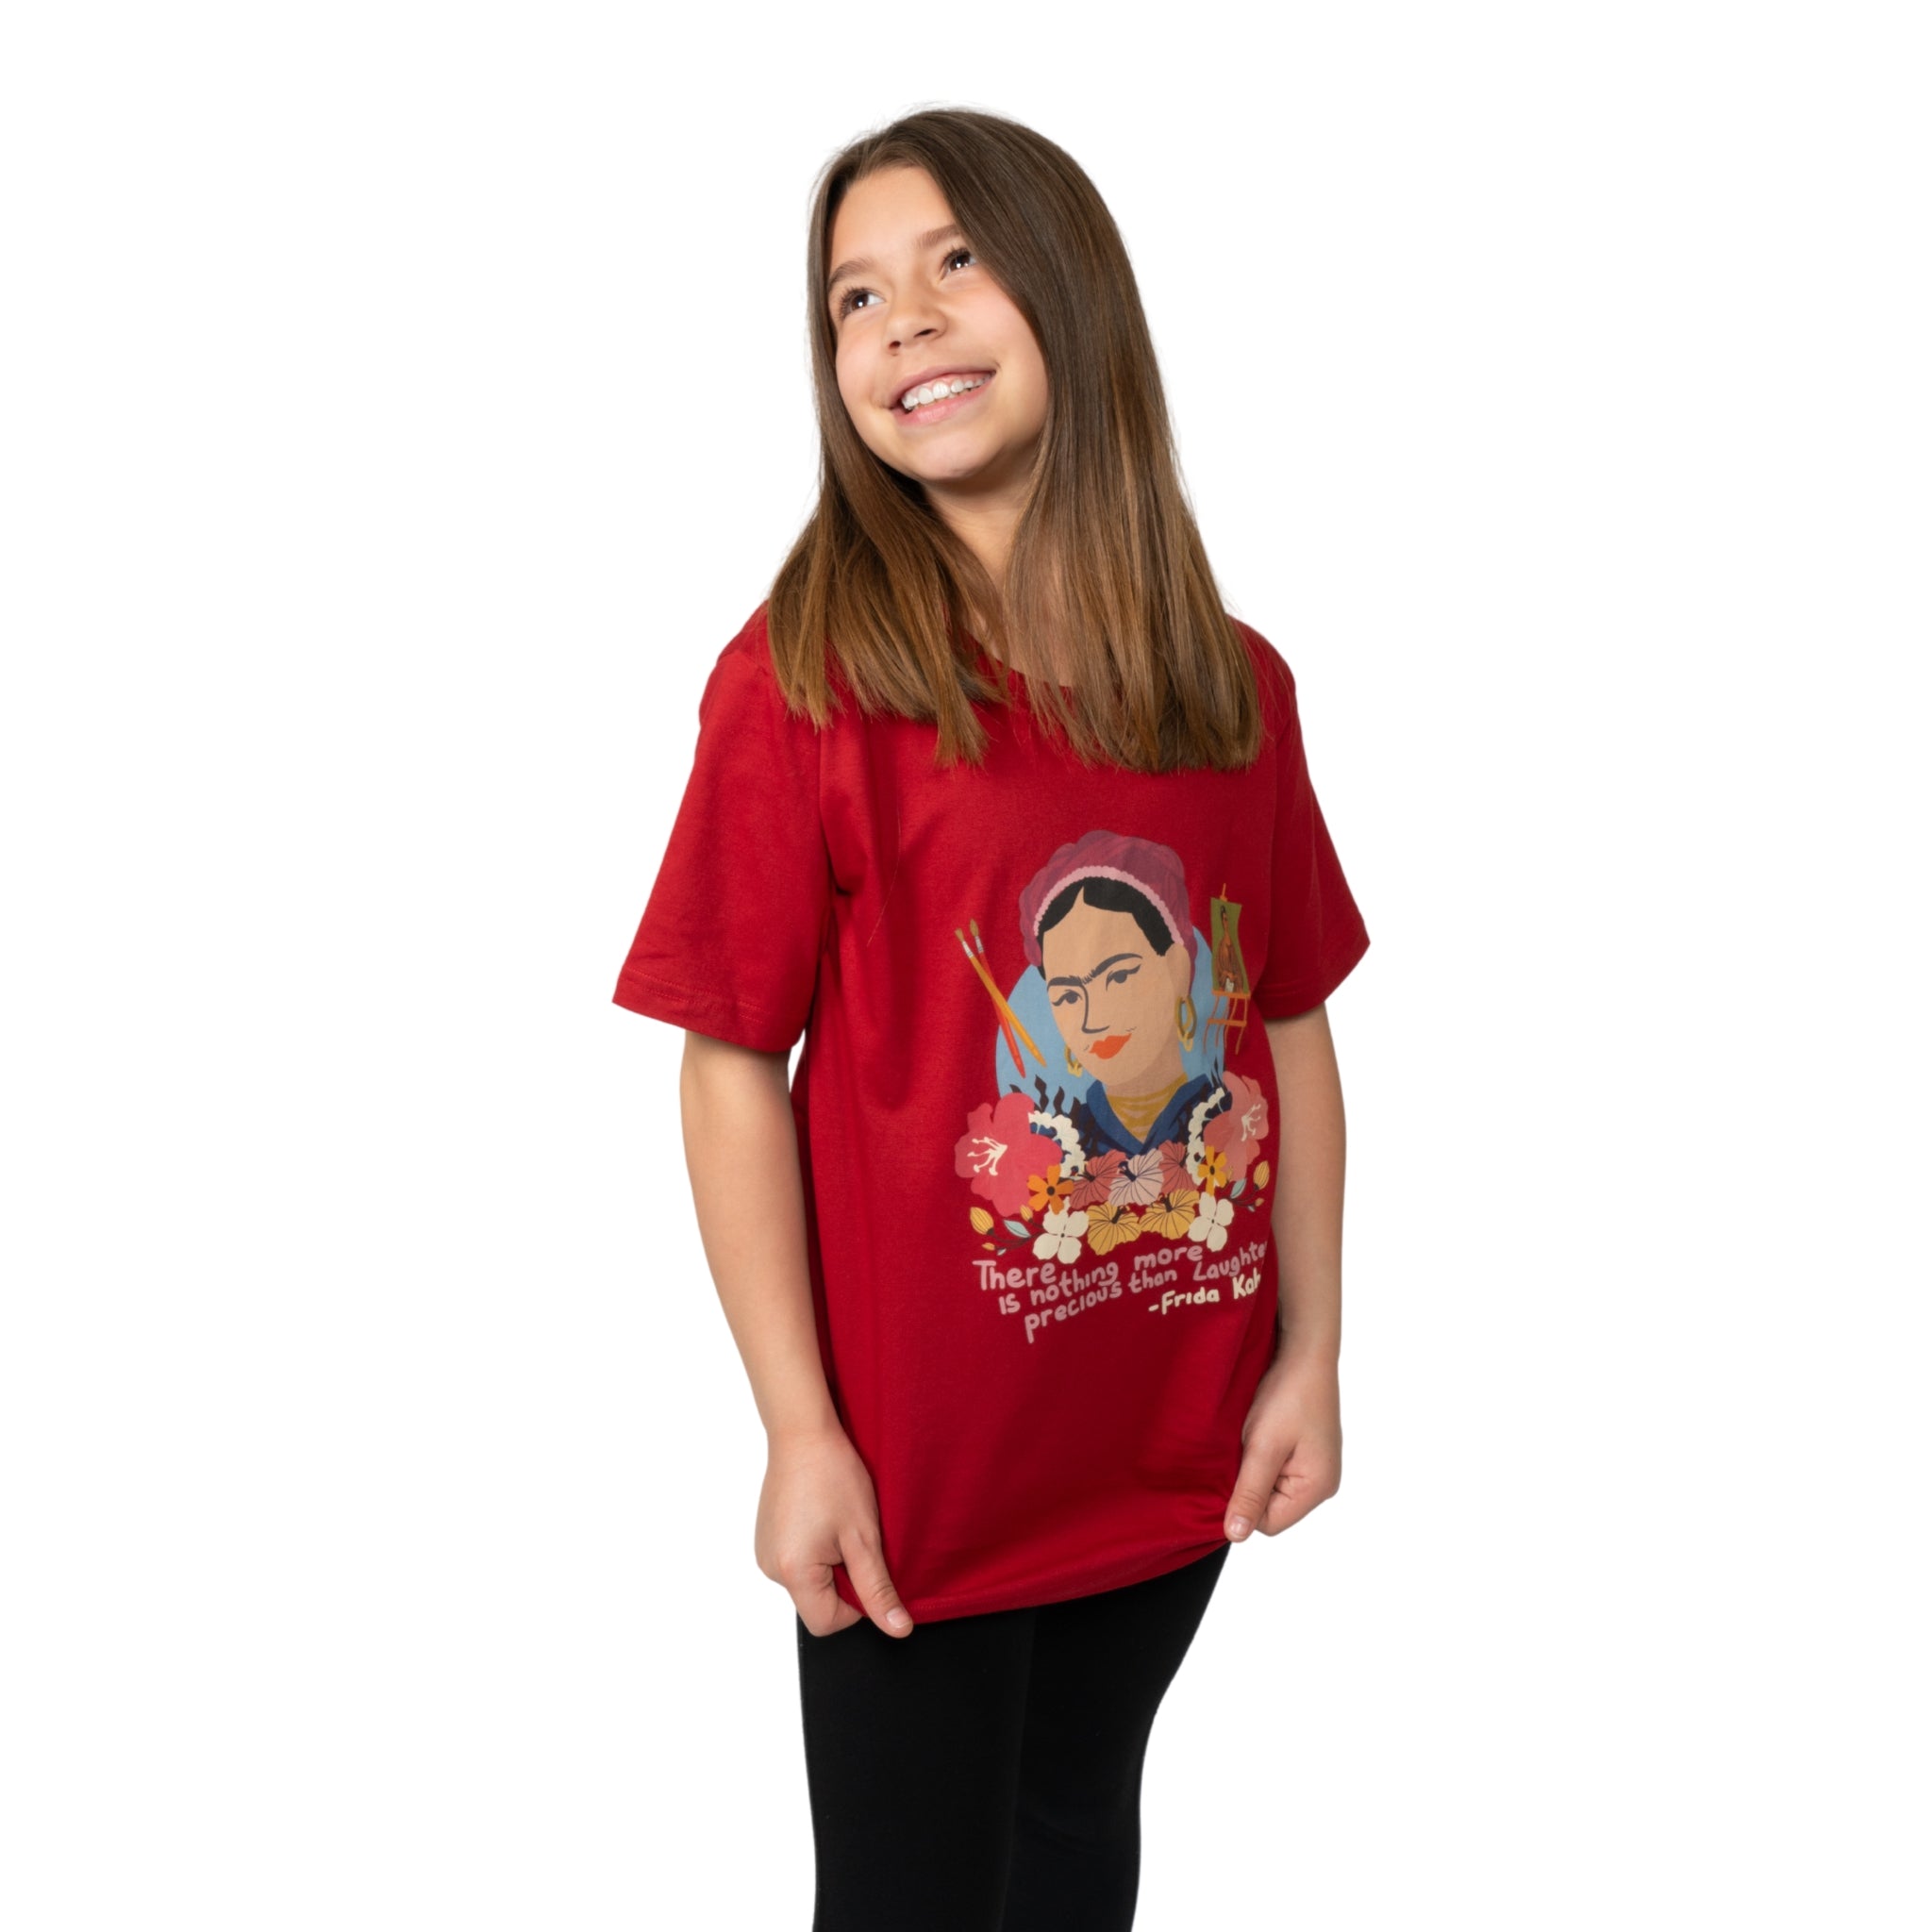 (Pre-order) Frida Kahlo Kids T-Shirt